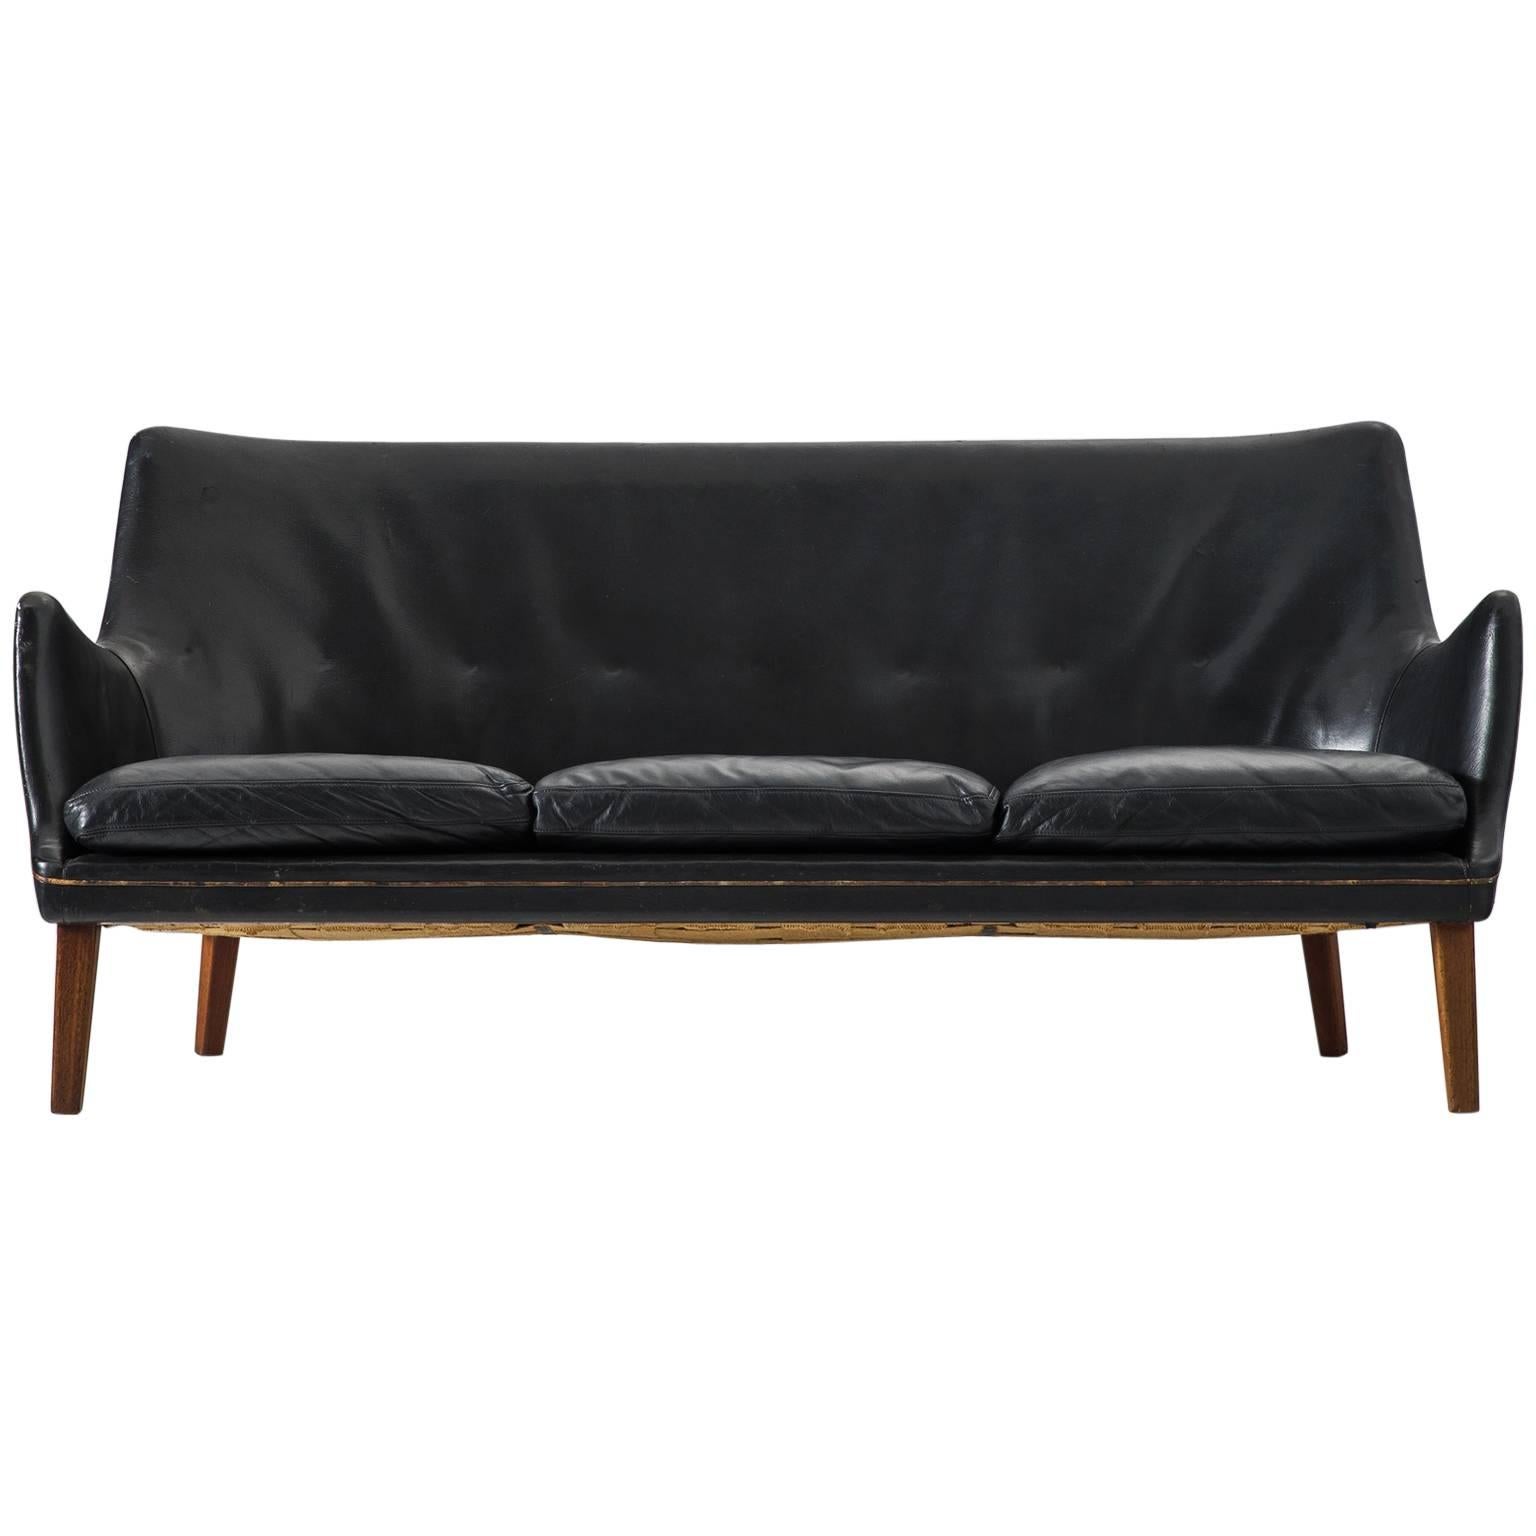 Arne Vodder Black Leather Sofa